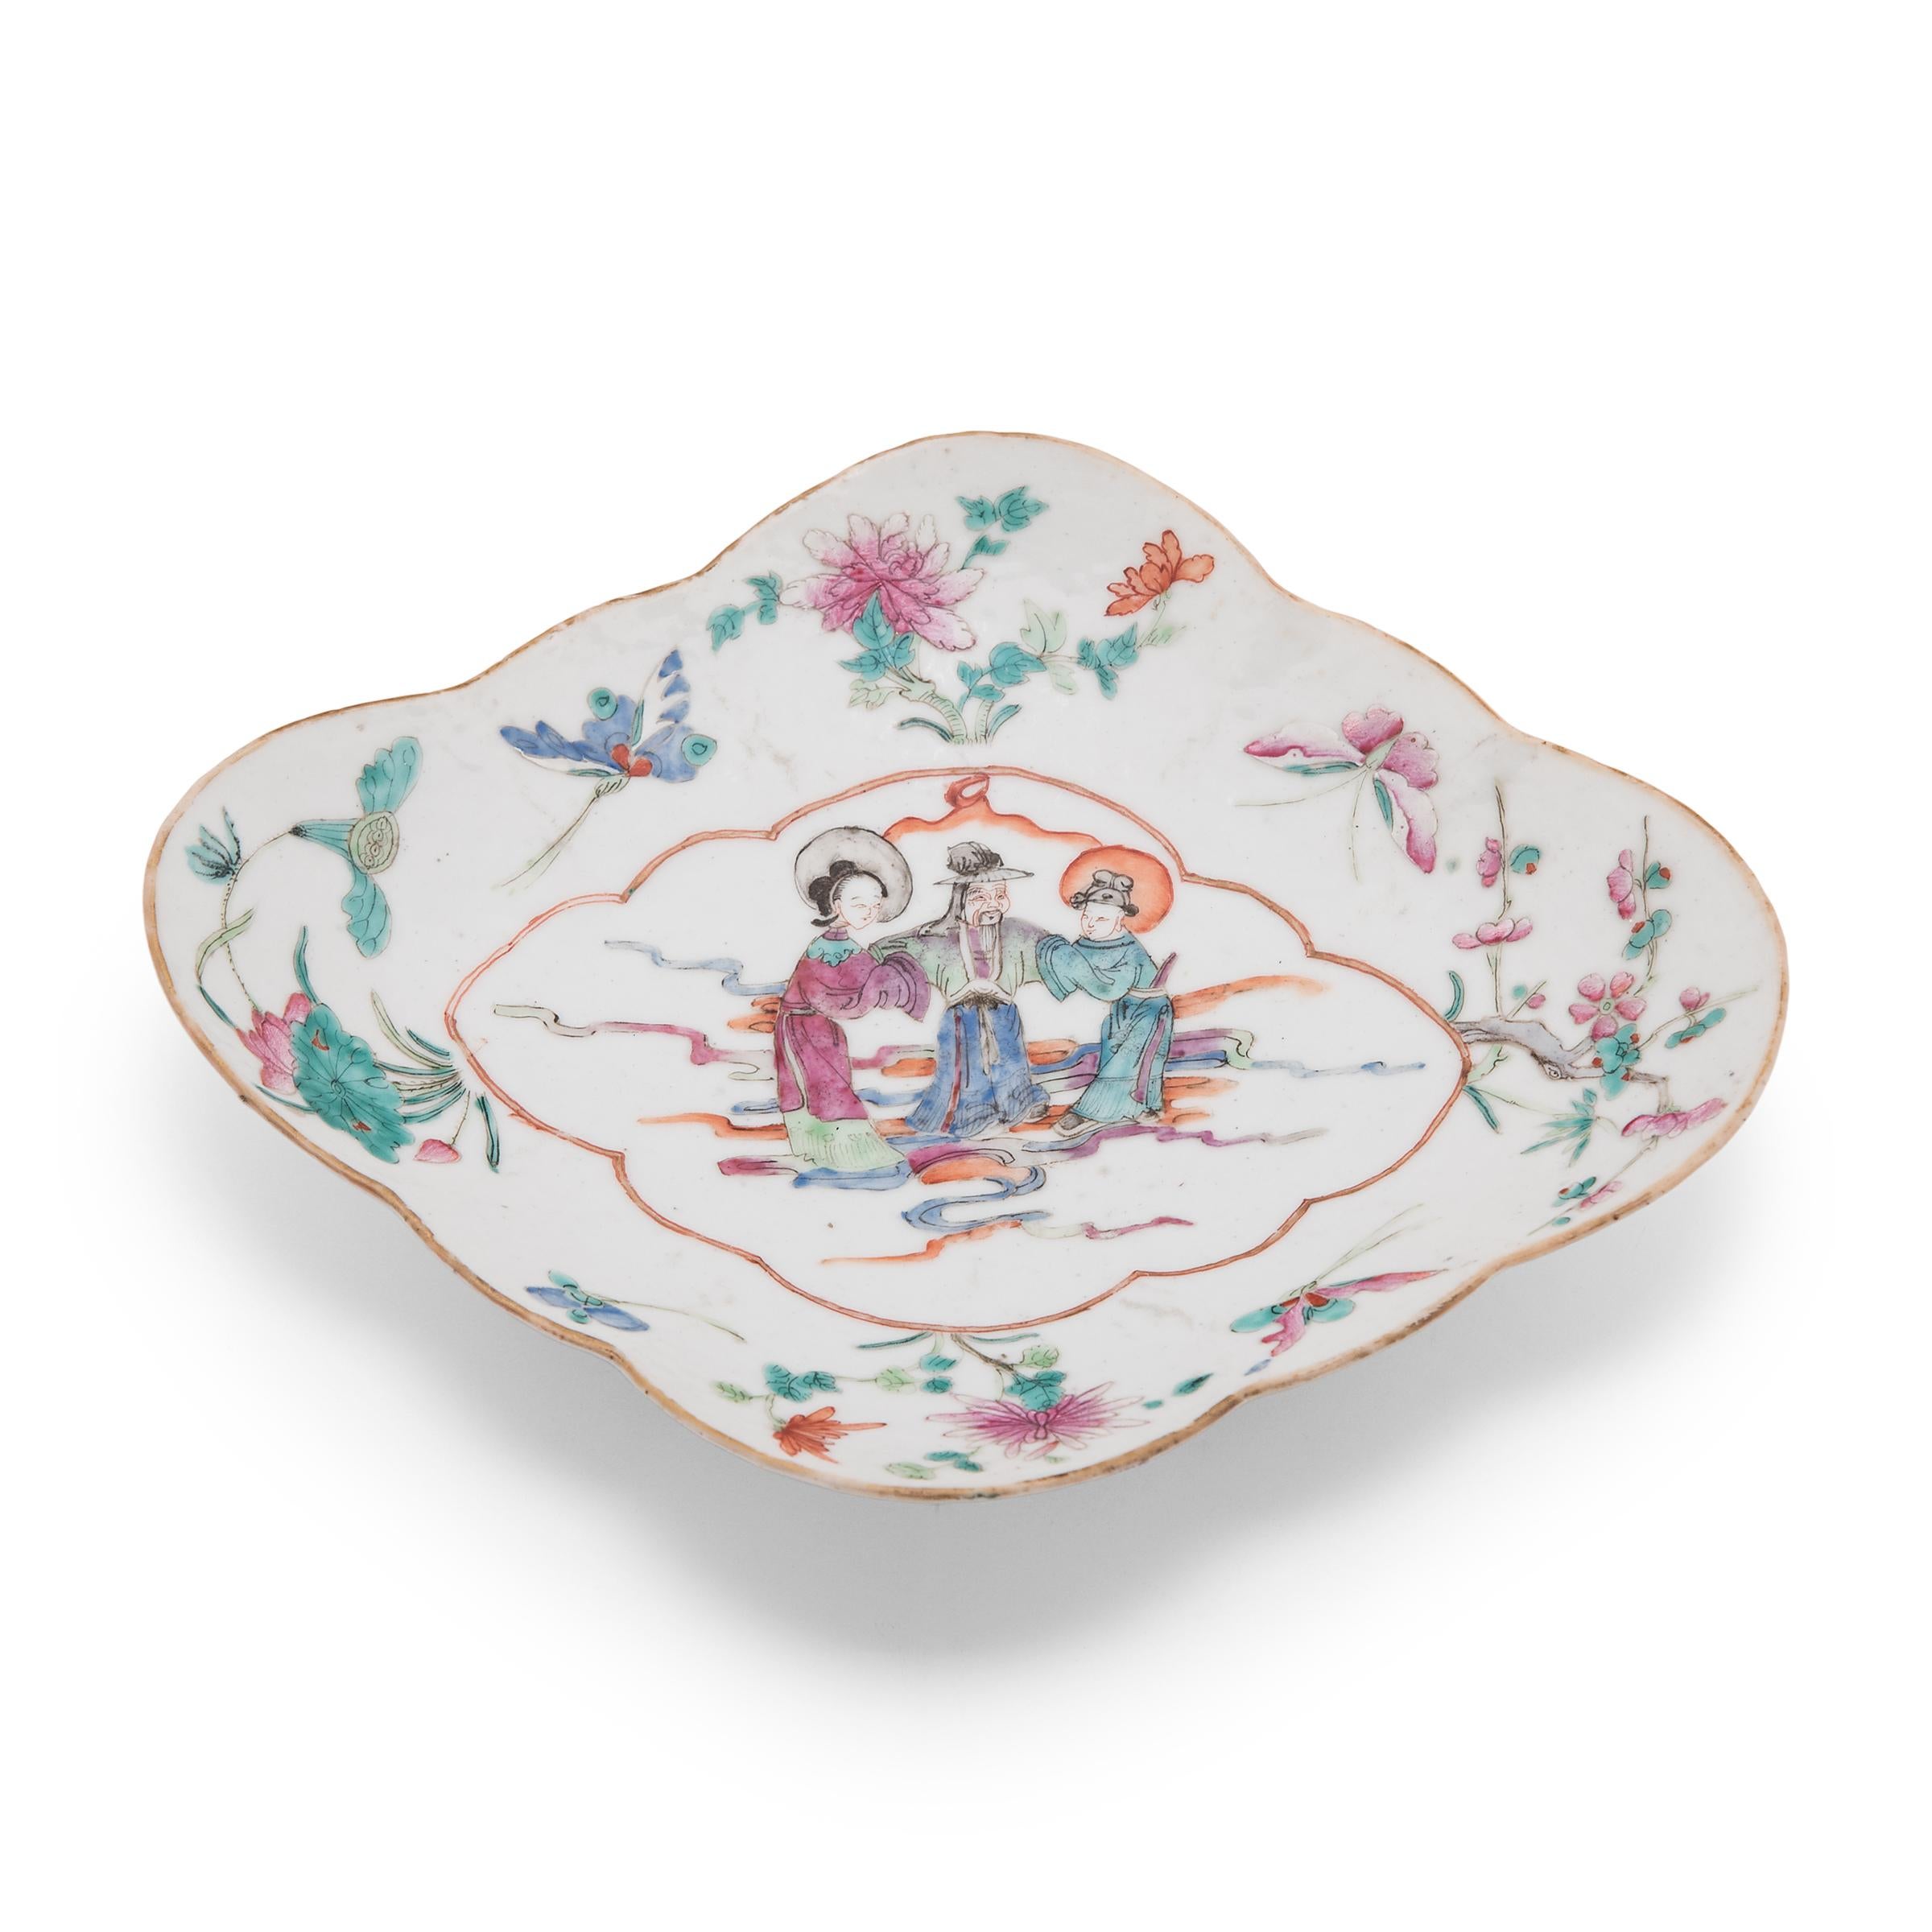 Diese farbenfrohe Porzellanschale stammt aus der Mitte des 19. Jahrhunderts und wurde ursprünglich als Servierschale für rituelle Opfergaben verwendet, die vor einem Hausaltar aufgestellt und mit Früchten, Backwaren und anderen Lebensmitteln